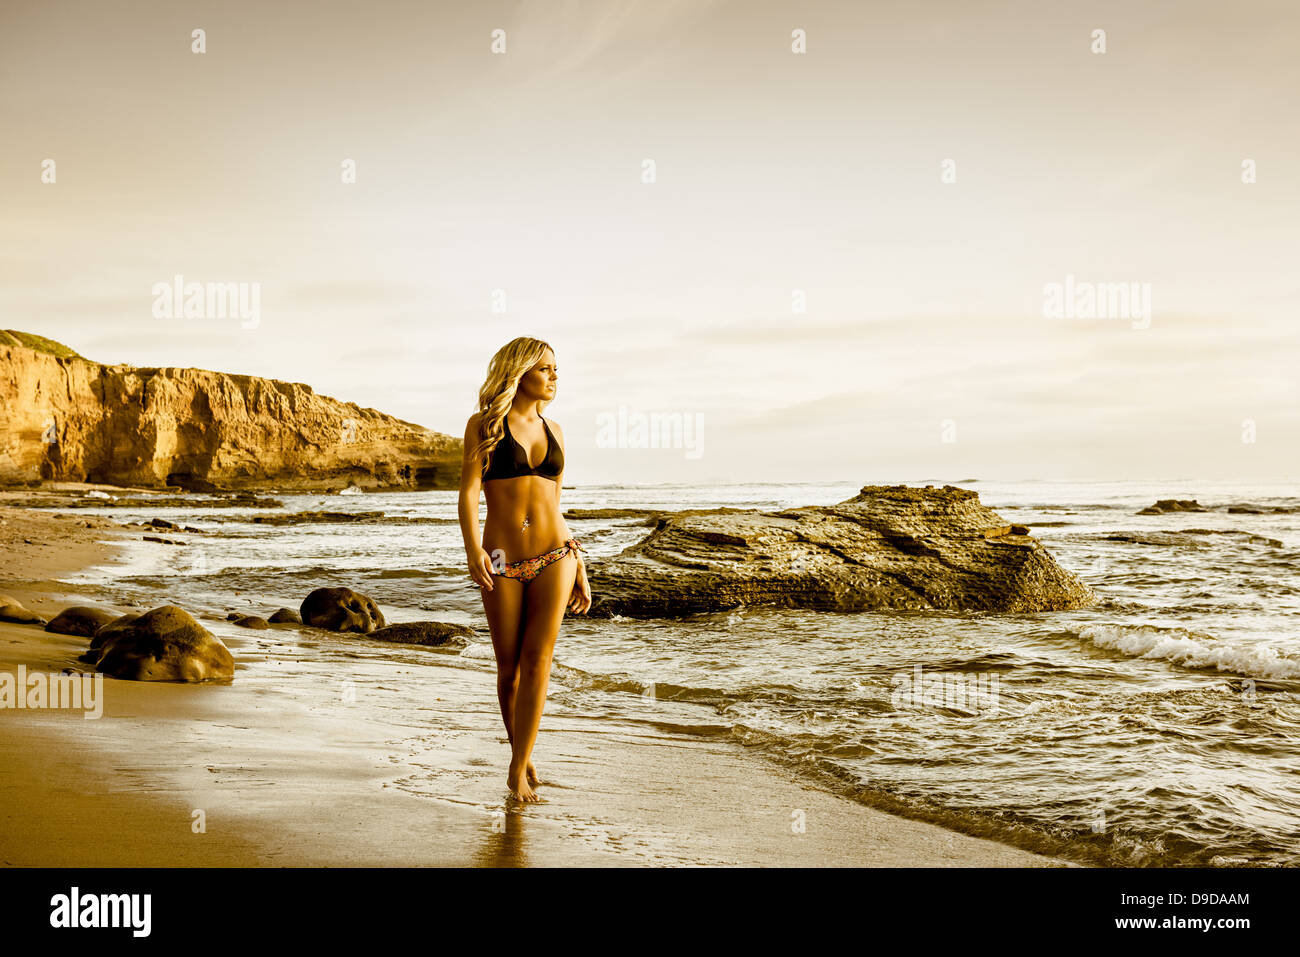 Young woman in bikini walking along beach Banque D'Images